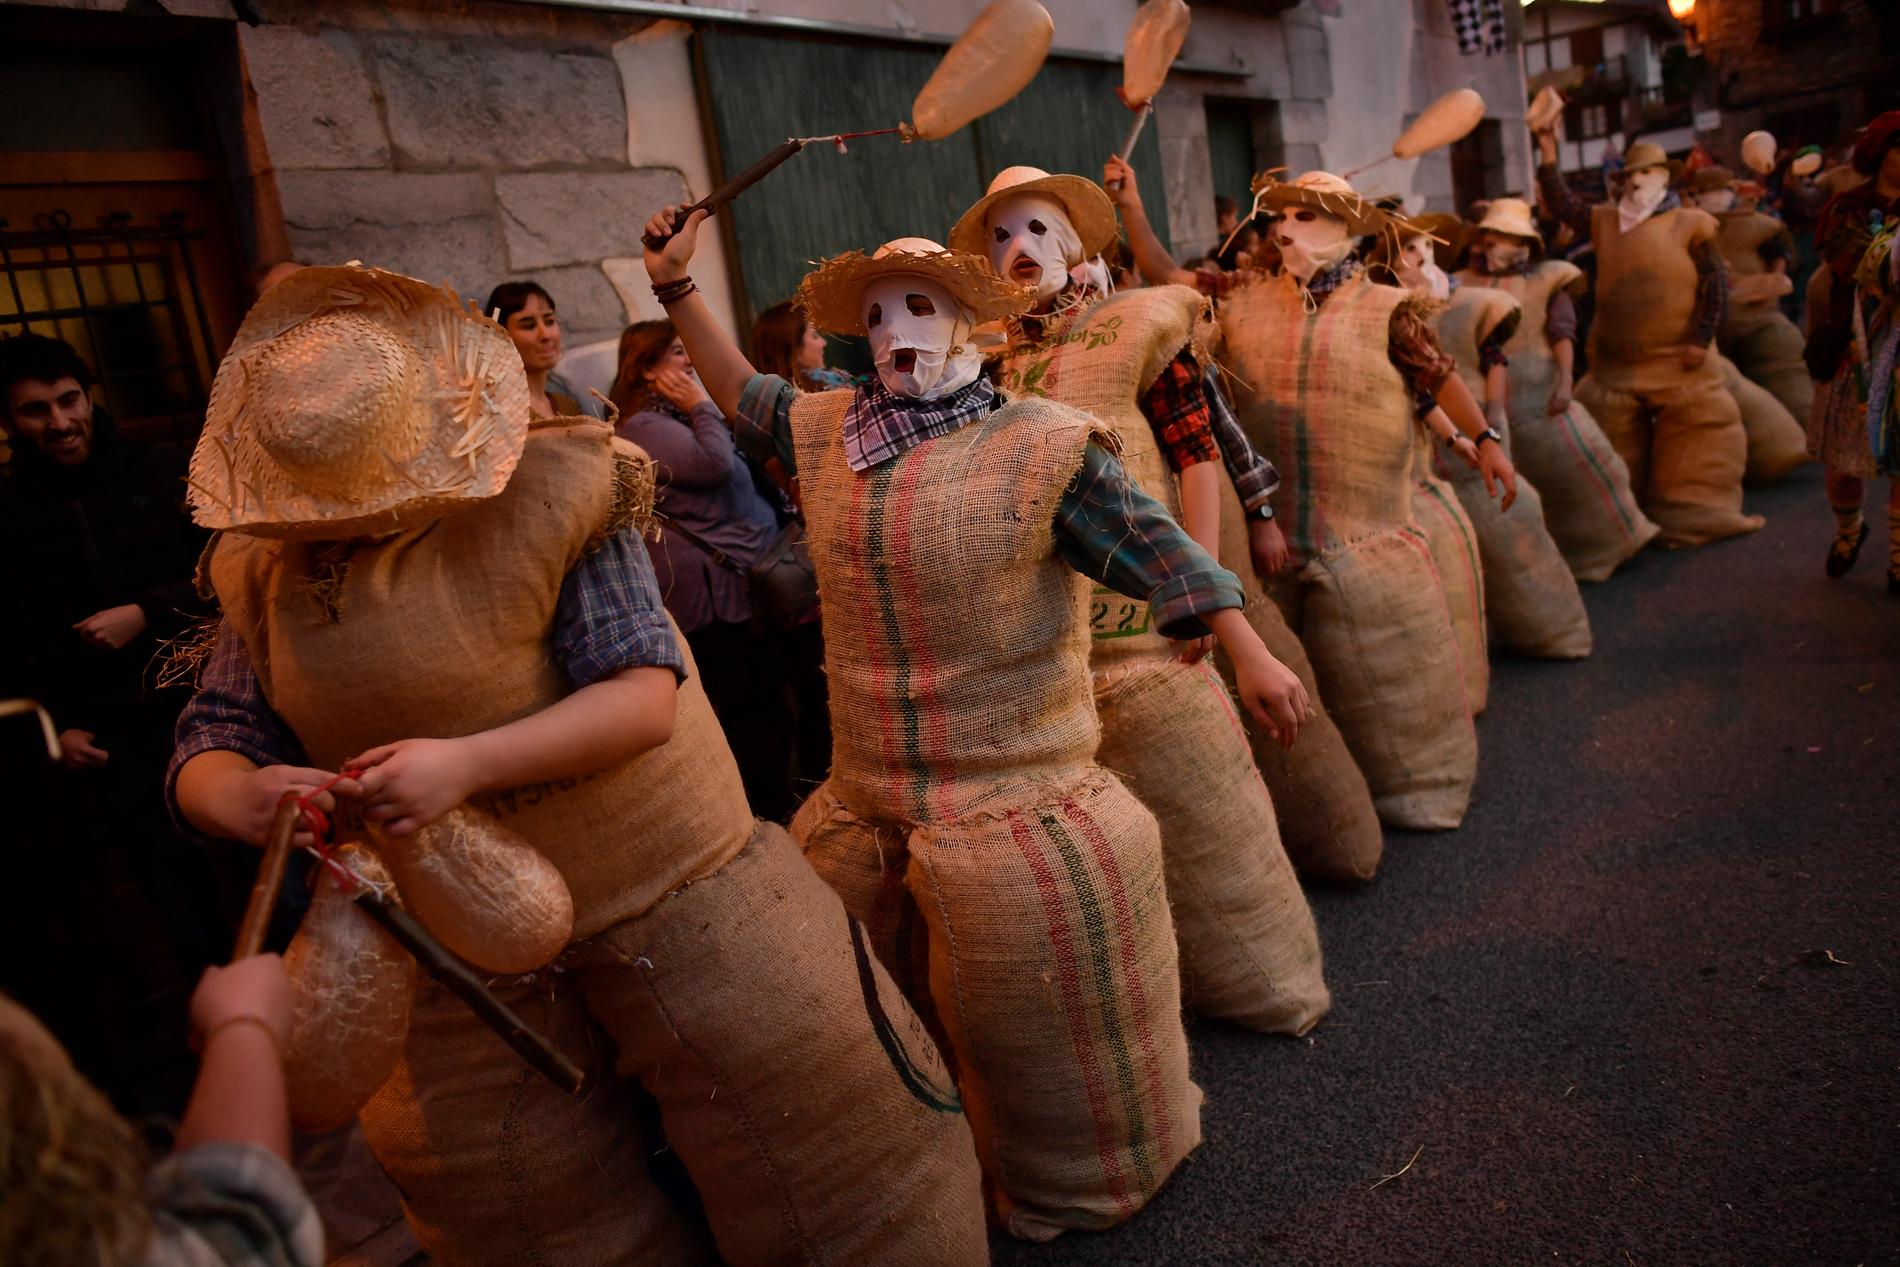 Karnevalsfigurerna zaku zaharrak (gamla säckar) i byn Lesaka i spanska Baskien. Efter mörkrets inbrott drar de runt genom gatorna.